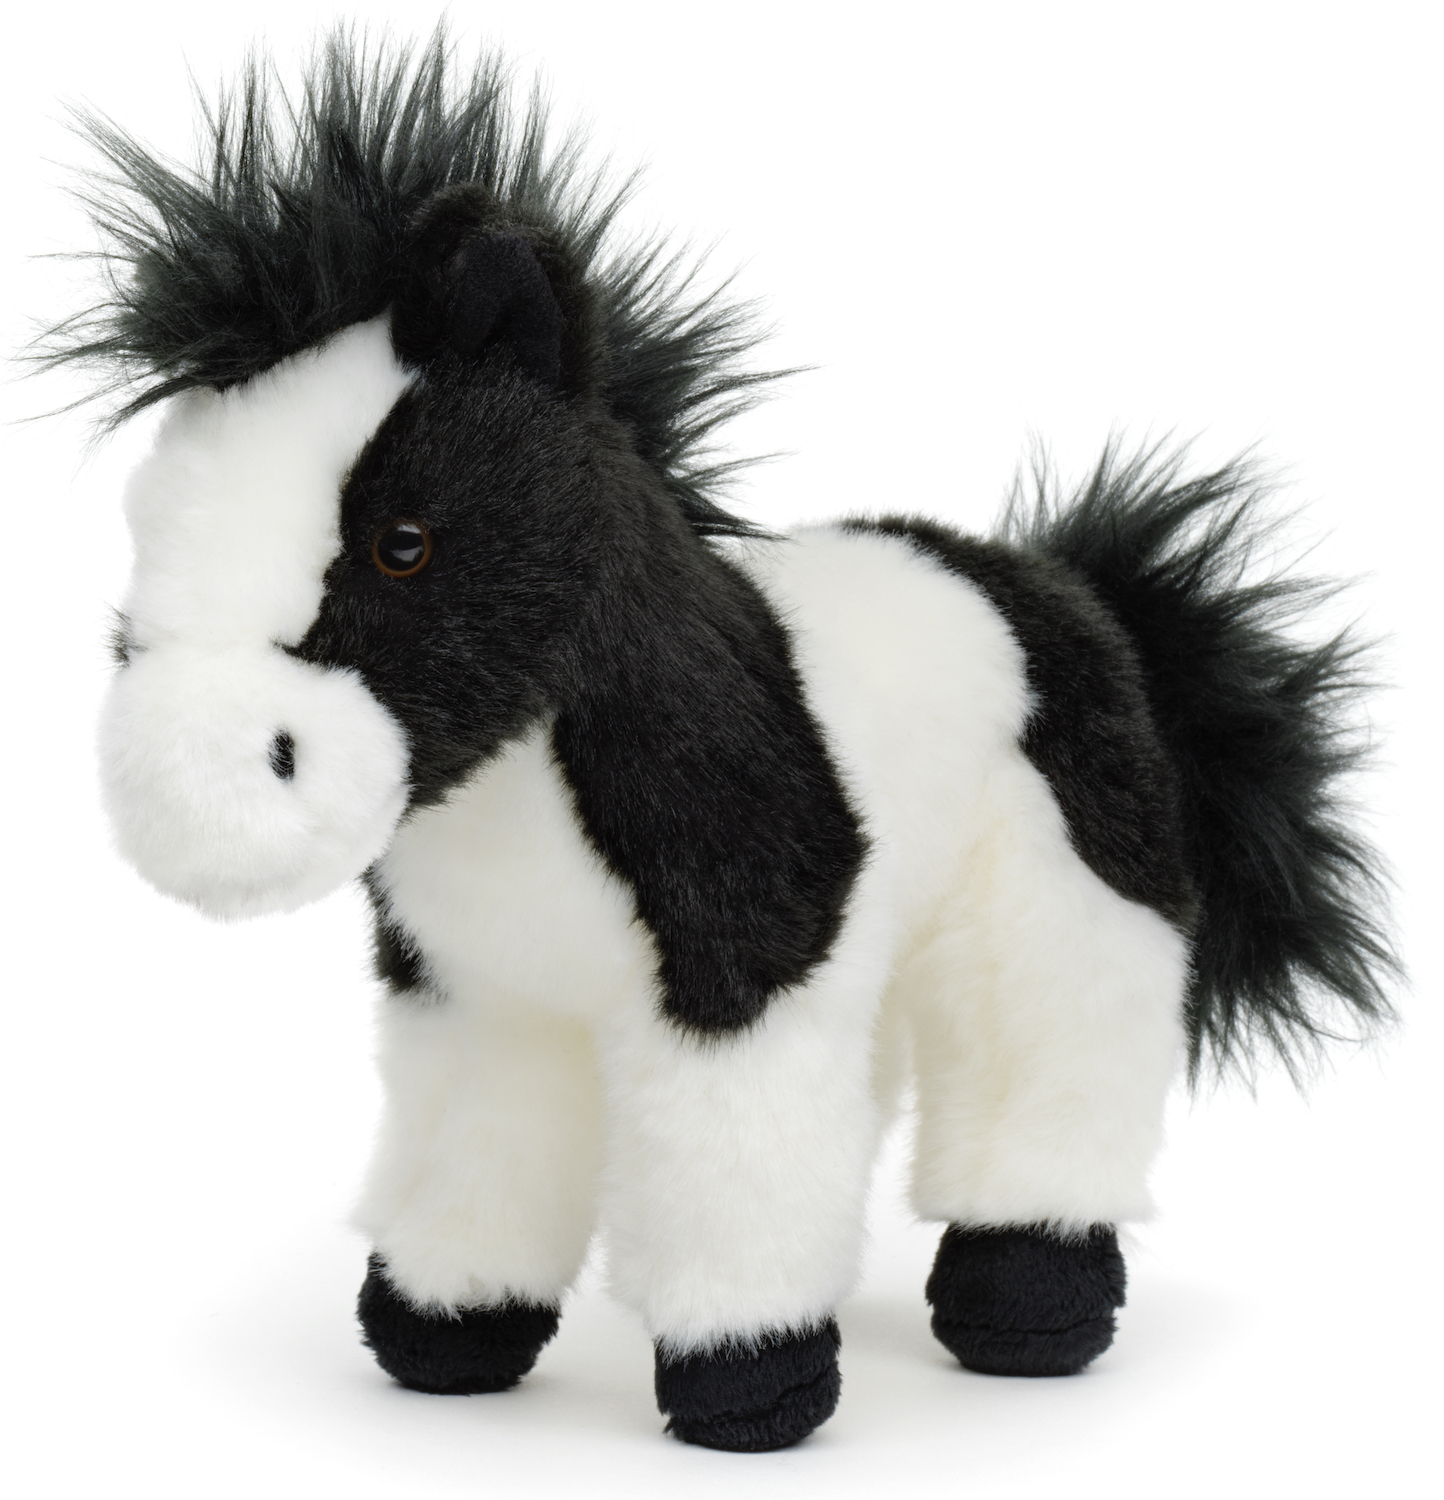 Pferd schwarz-weiß, stehend - 19 cm (Höhe)